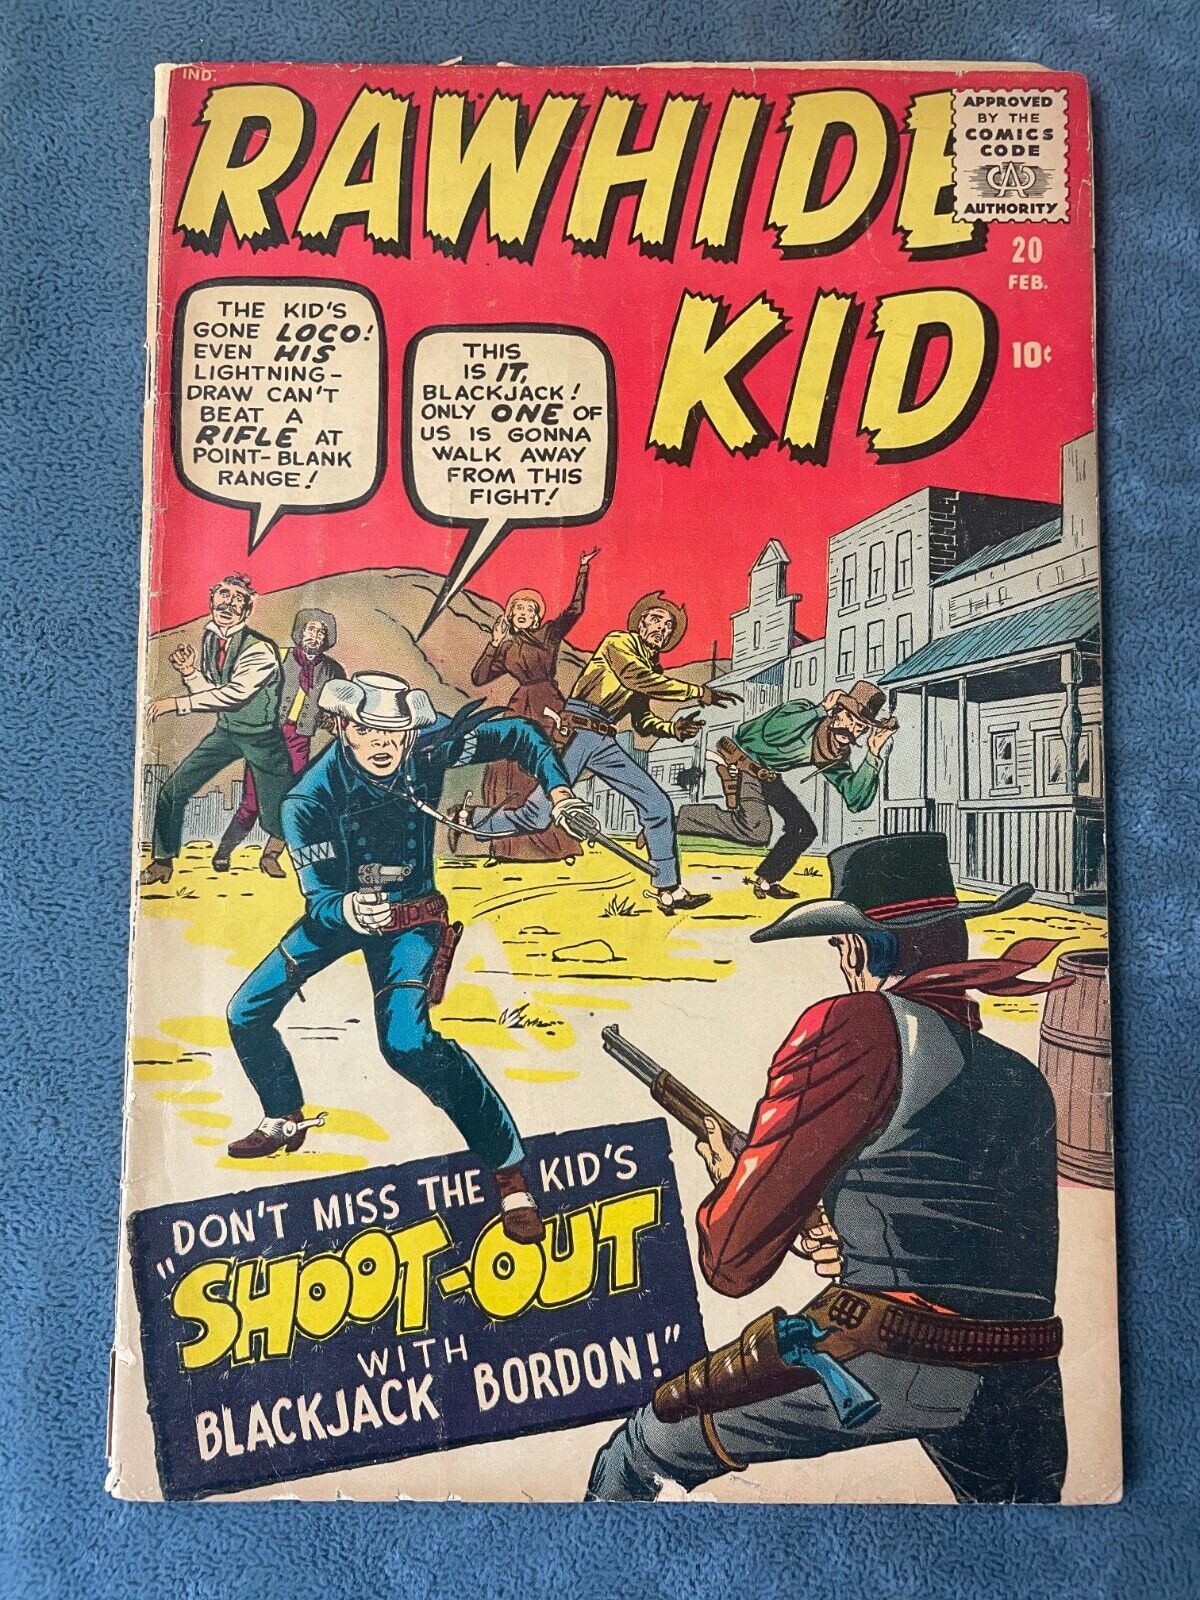 Rawhide Kid #20 1961 Atlas Marvel Comic Book Silver Age Western Jack Kirby VG-